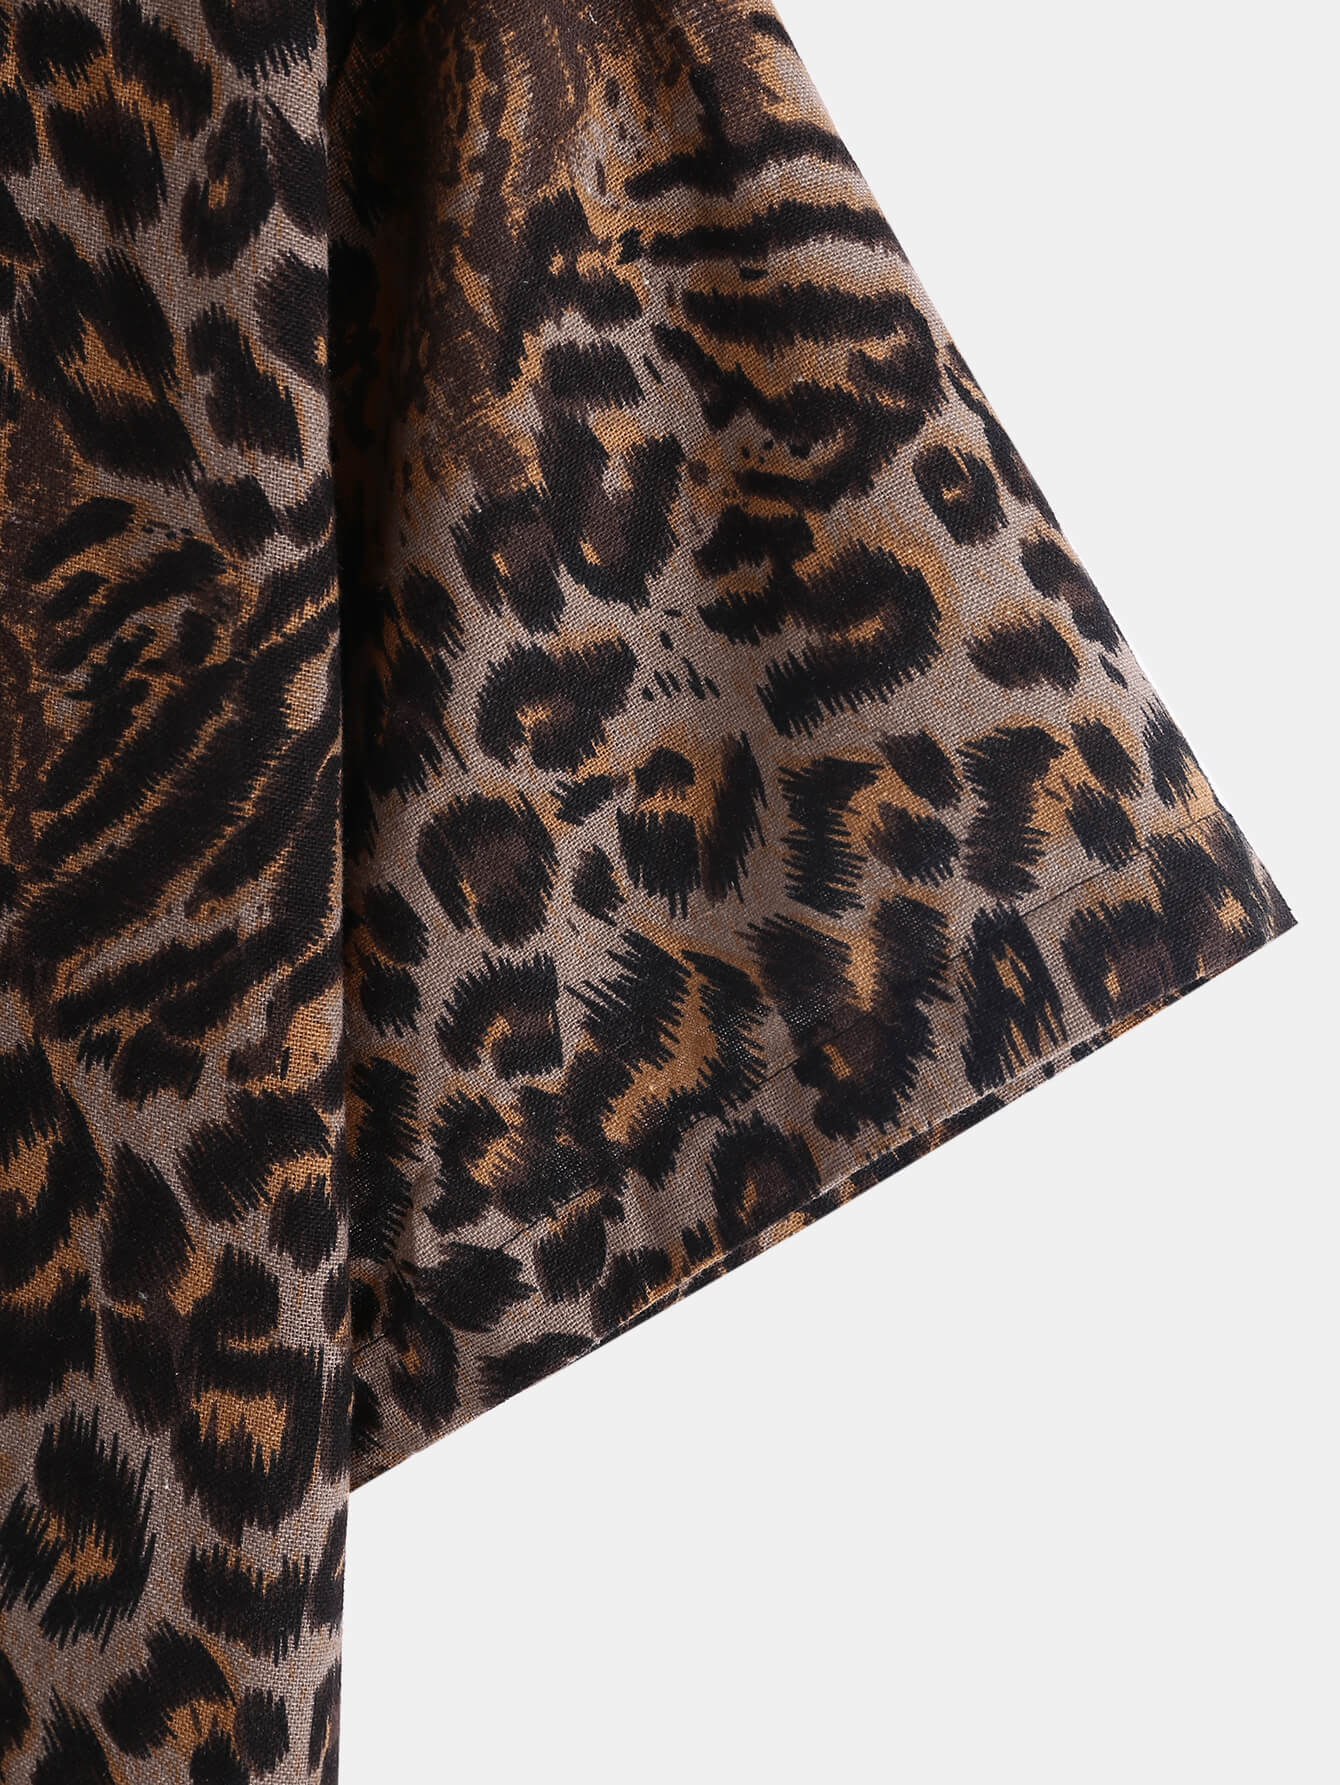 Irregular Leopard Print Shirt